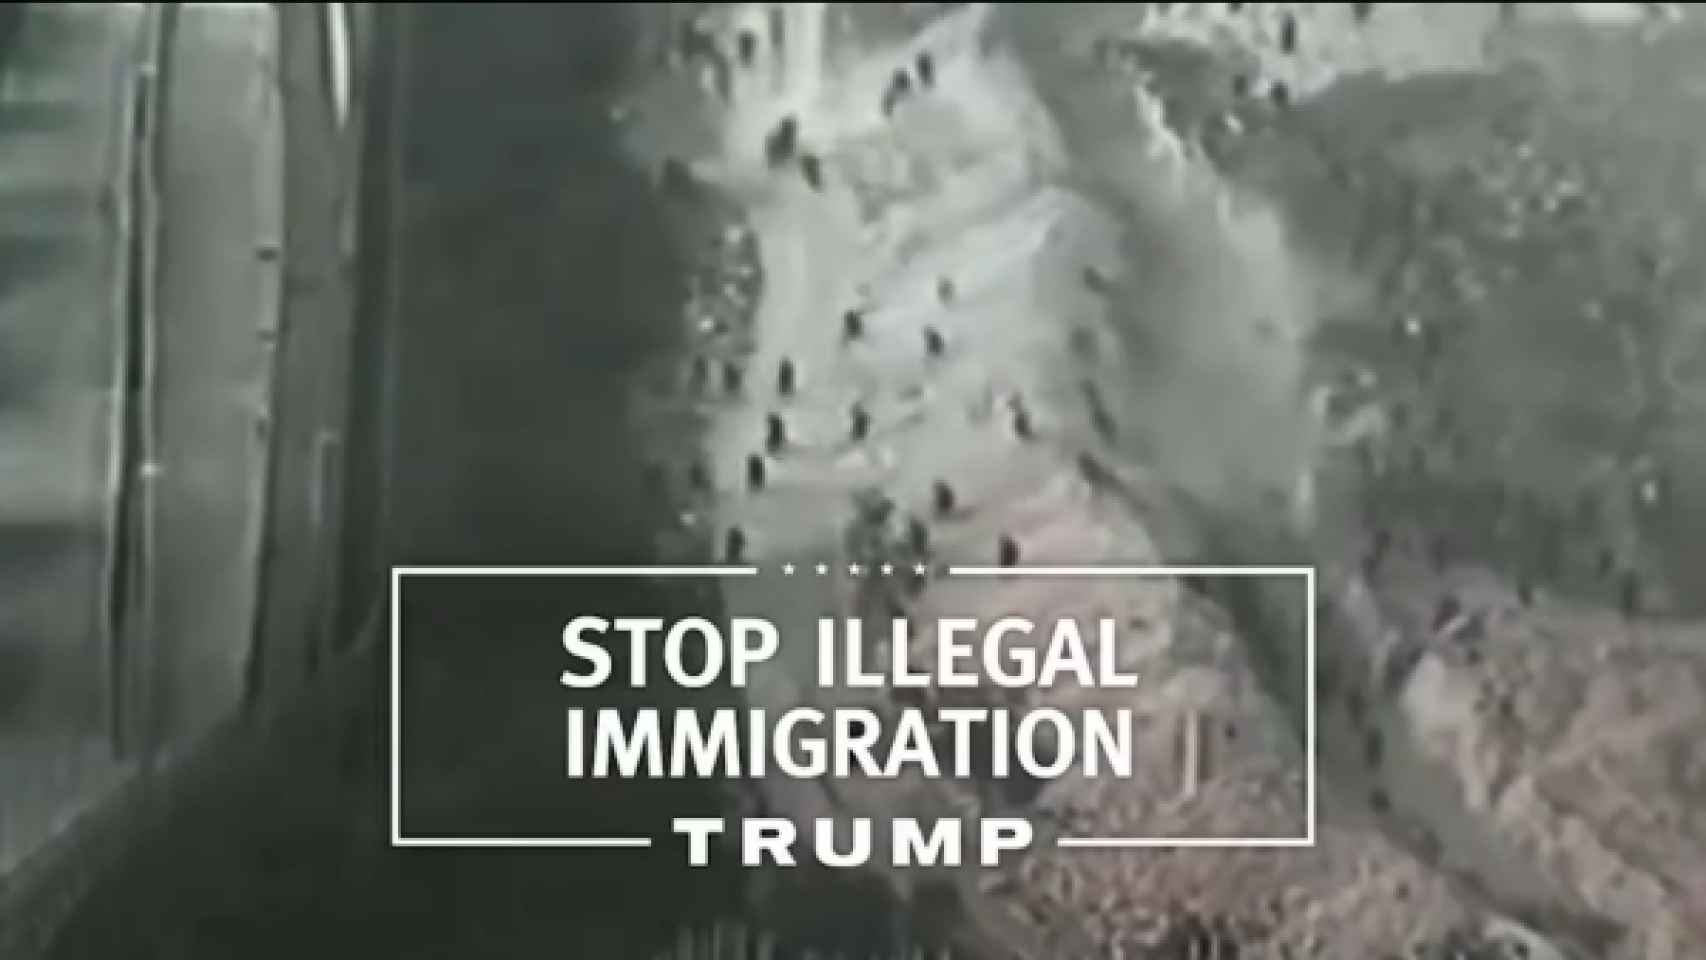 Pantallazo del vídeo con imágenes de Melilla atribuídas a México.